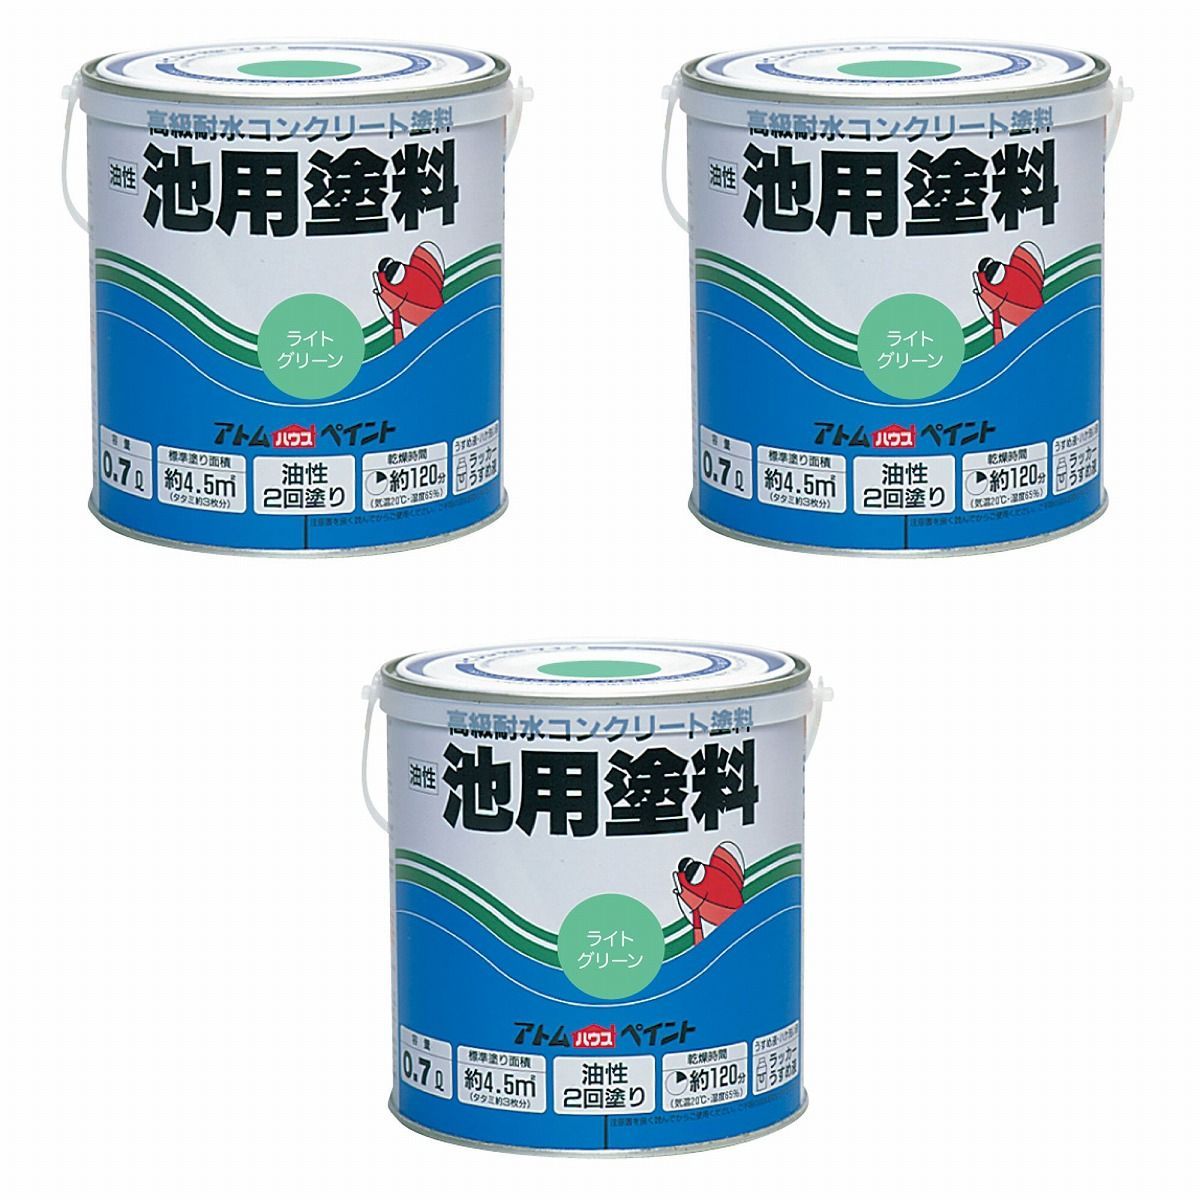 アトムハウスペイント 油性池用塗料0.7L ライトグリーン 3缶セット【BT-56】 バックティースショップ メルカリ